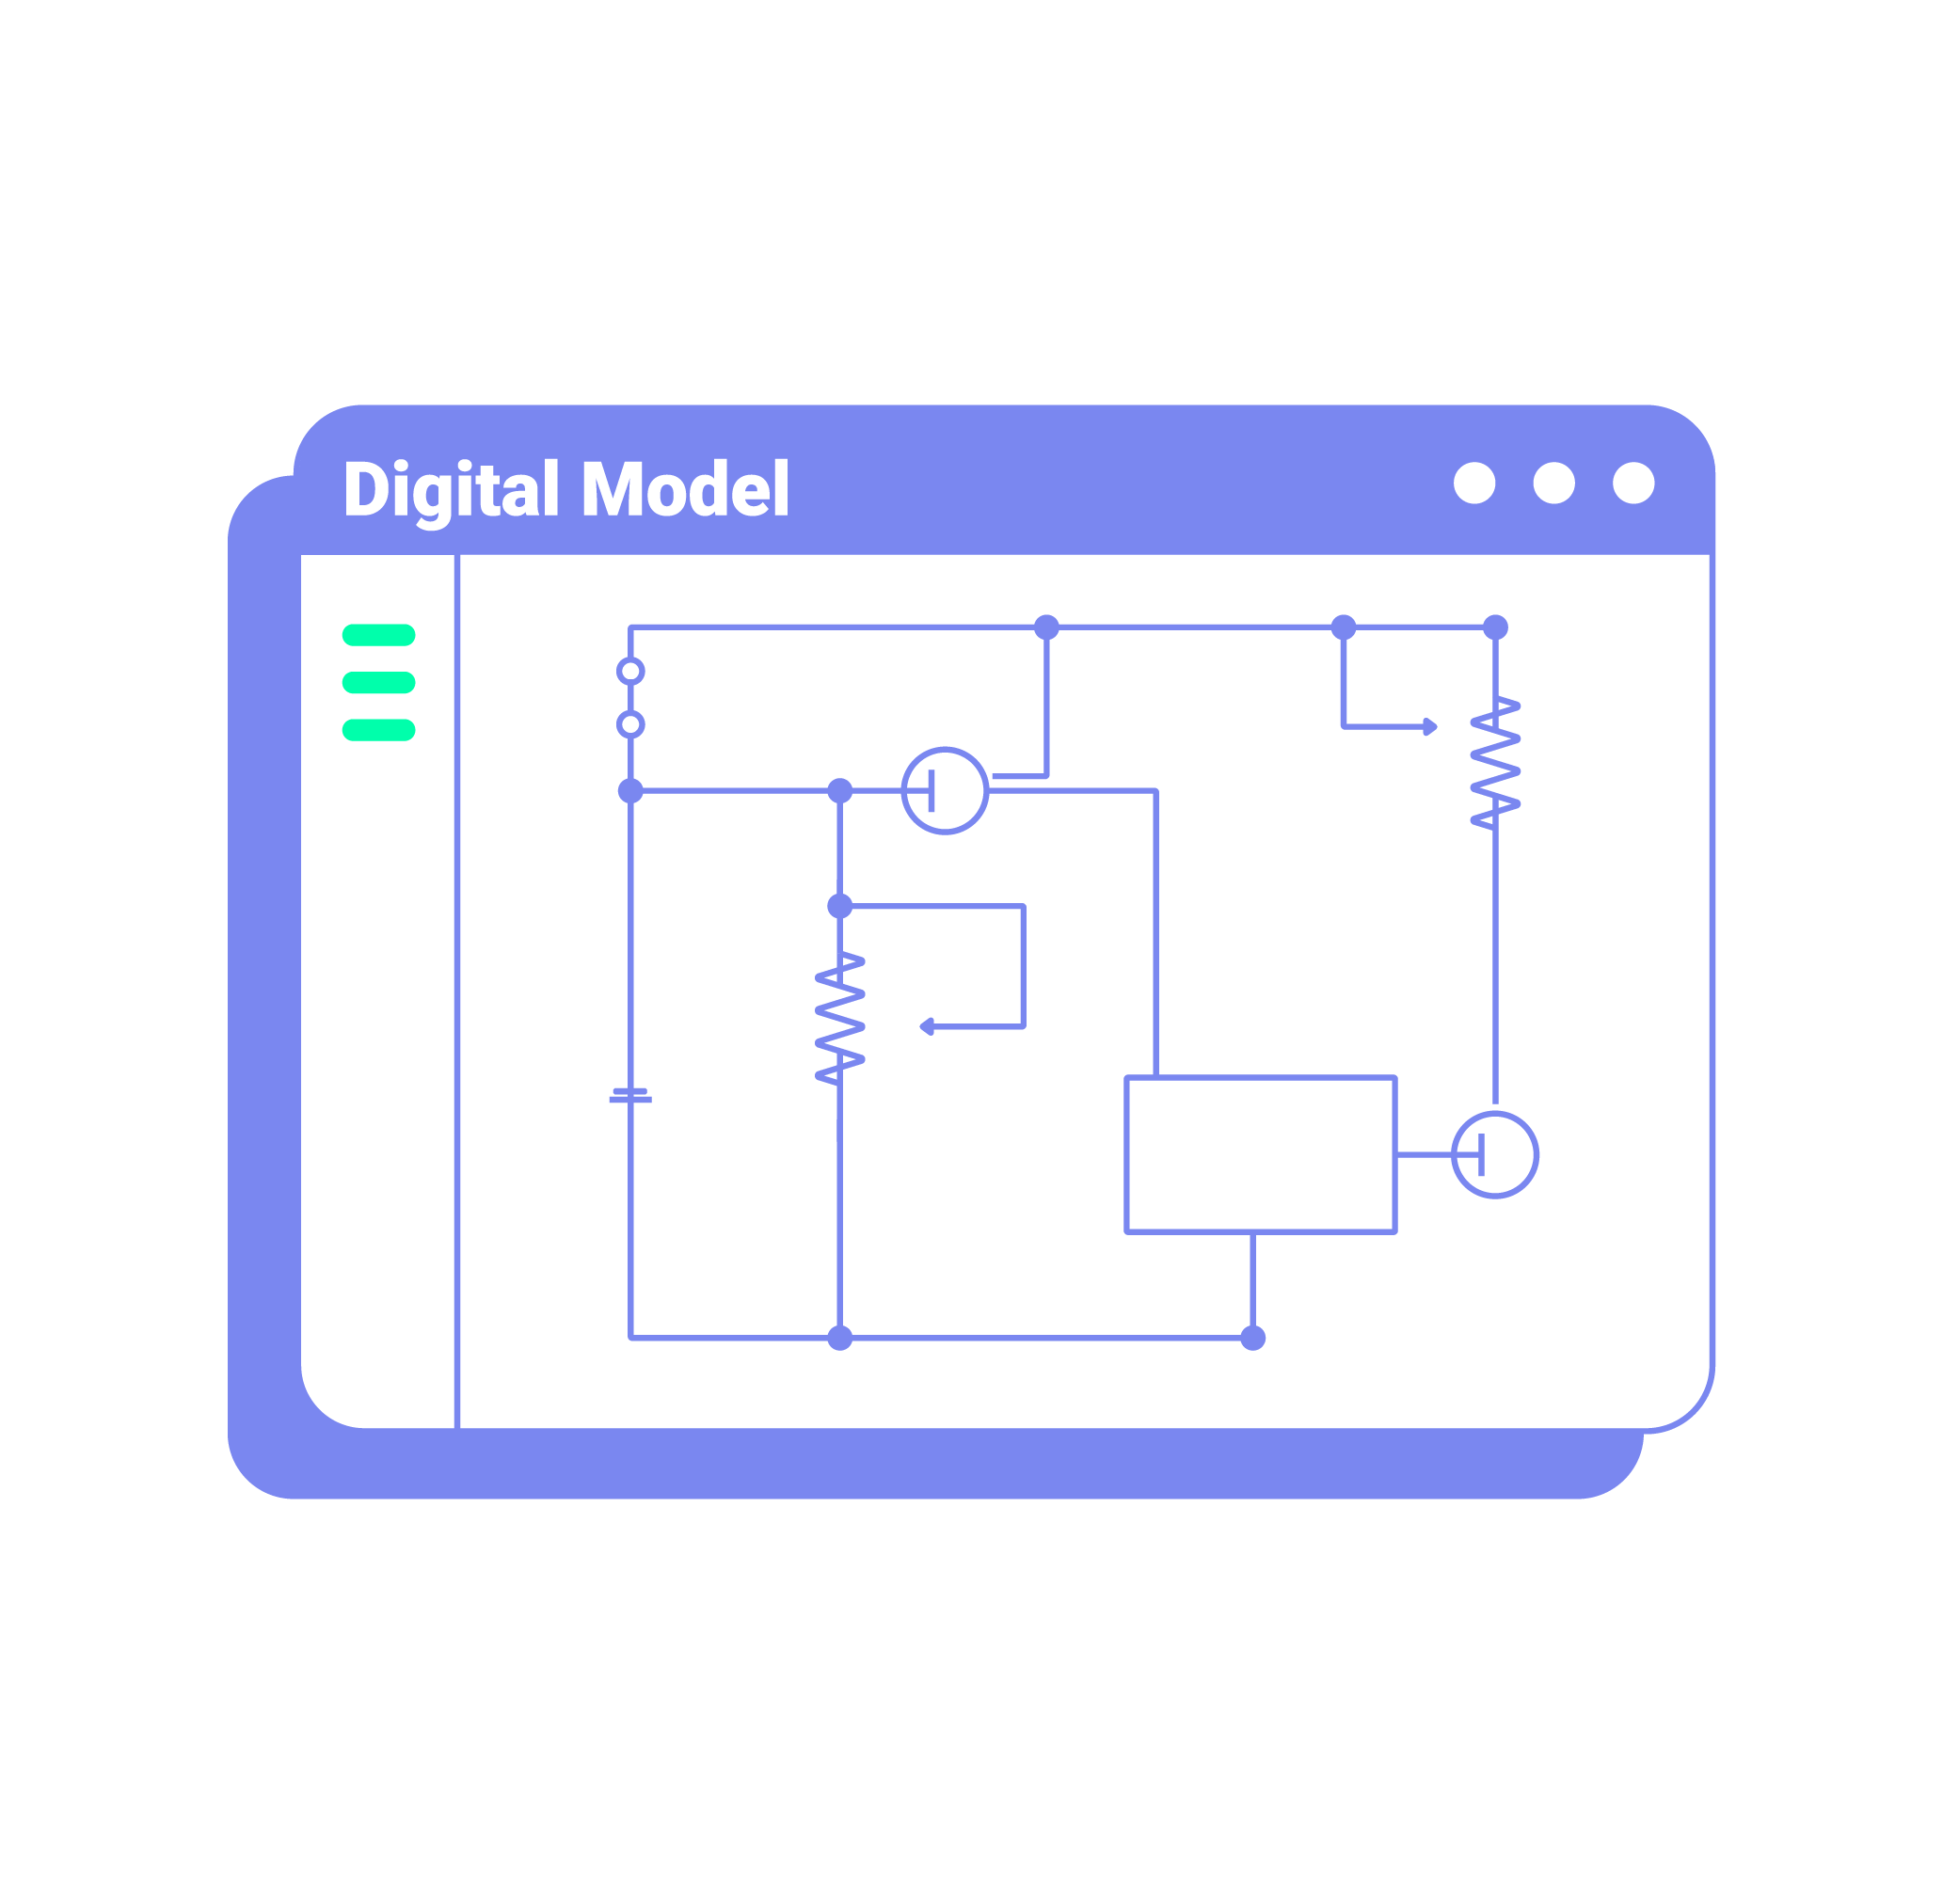 Digital Model